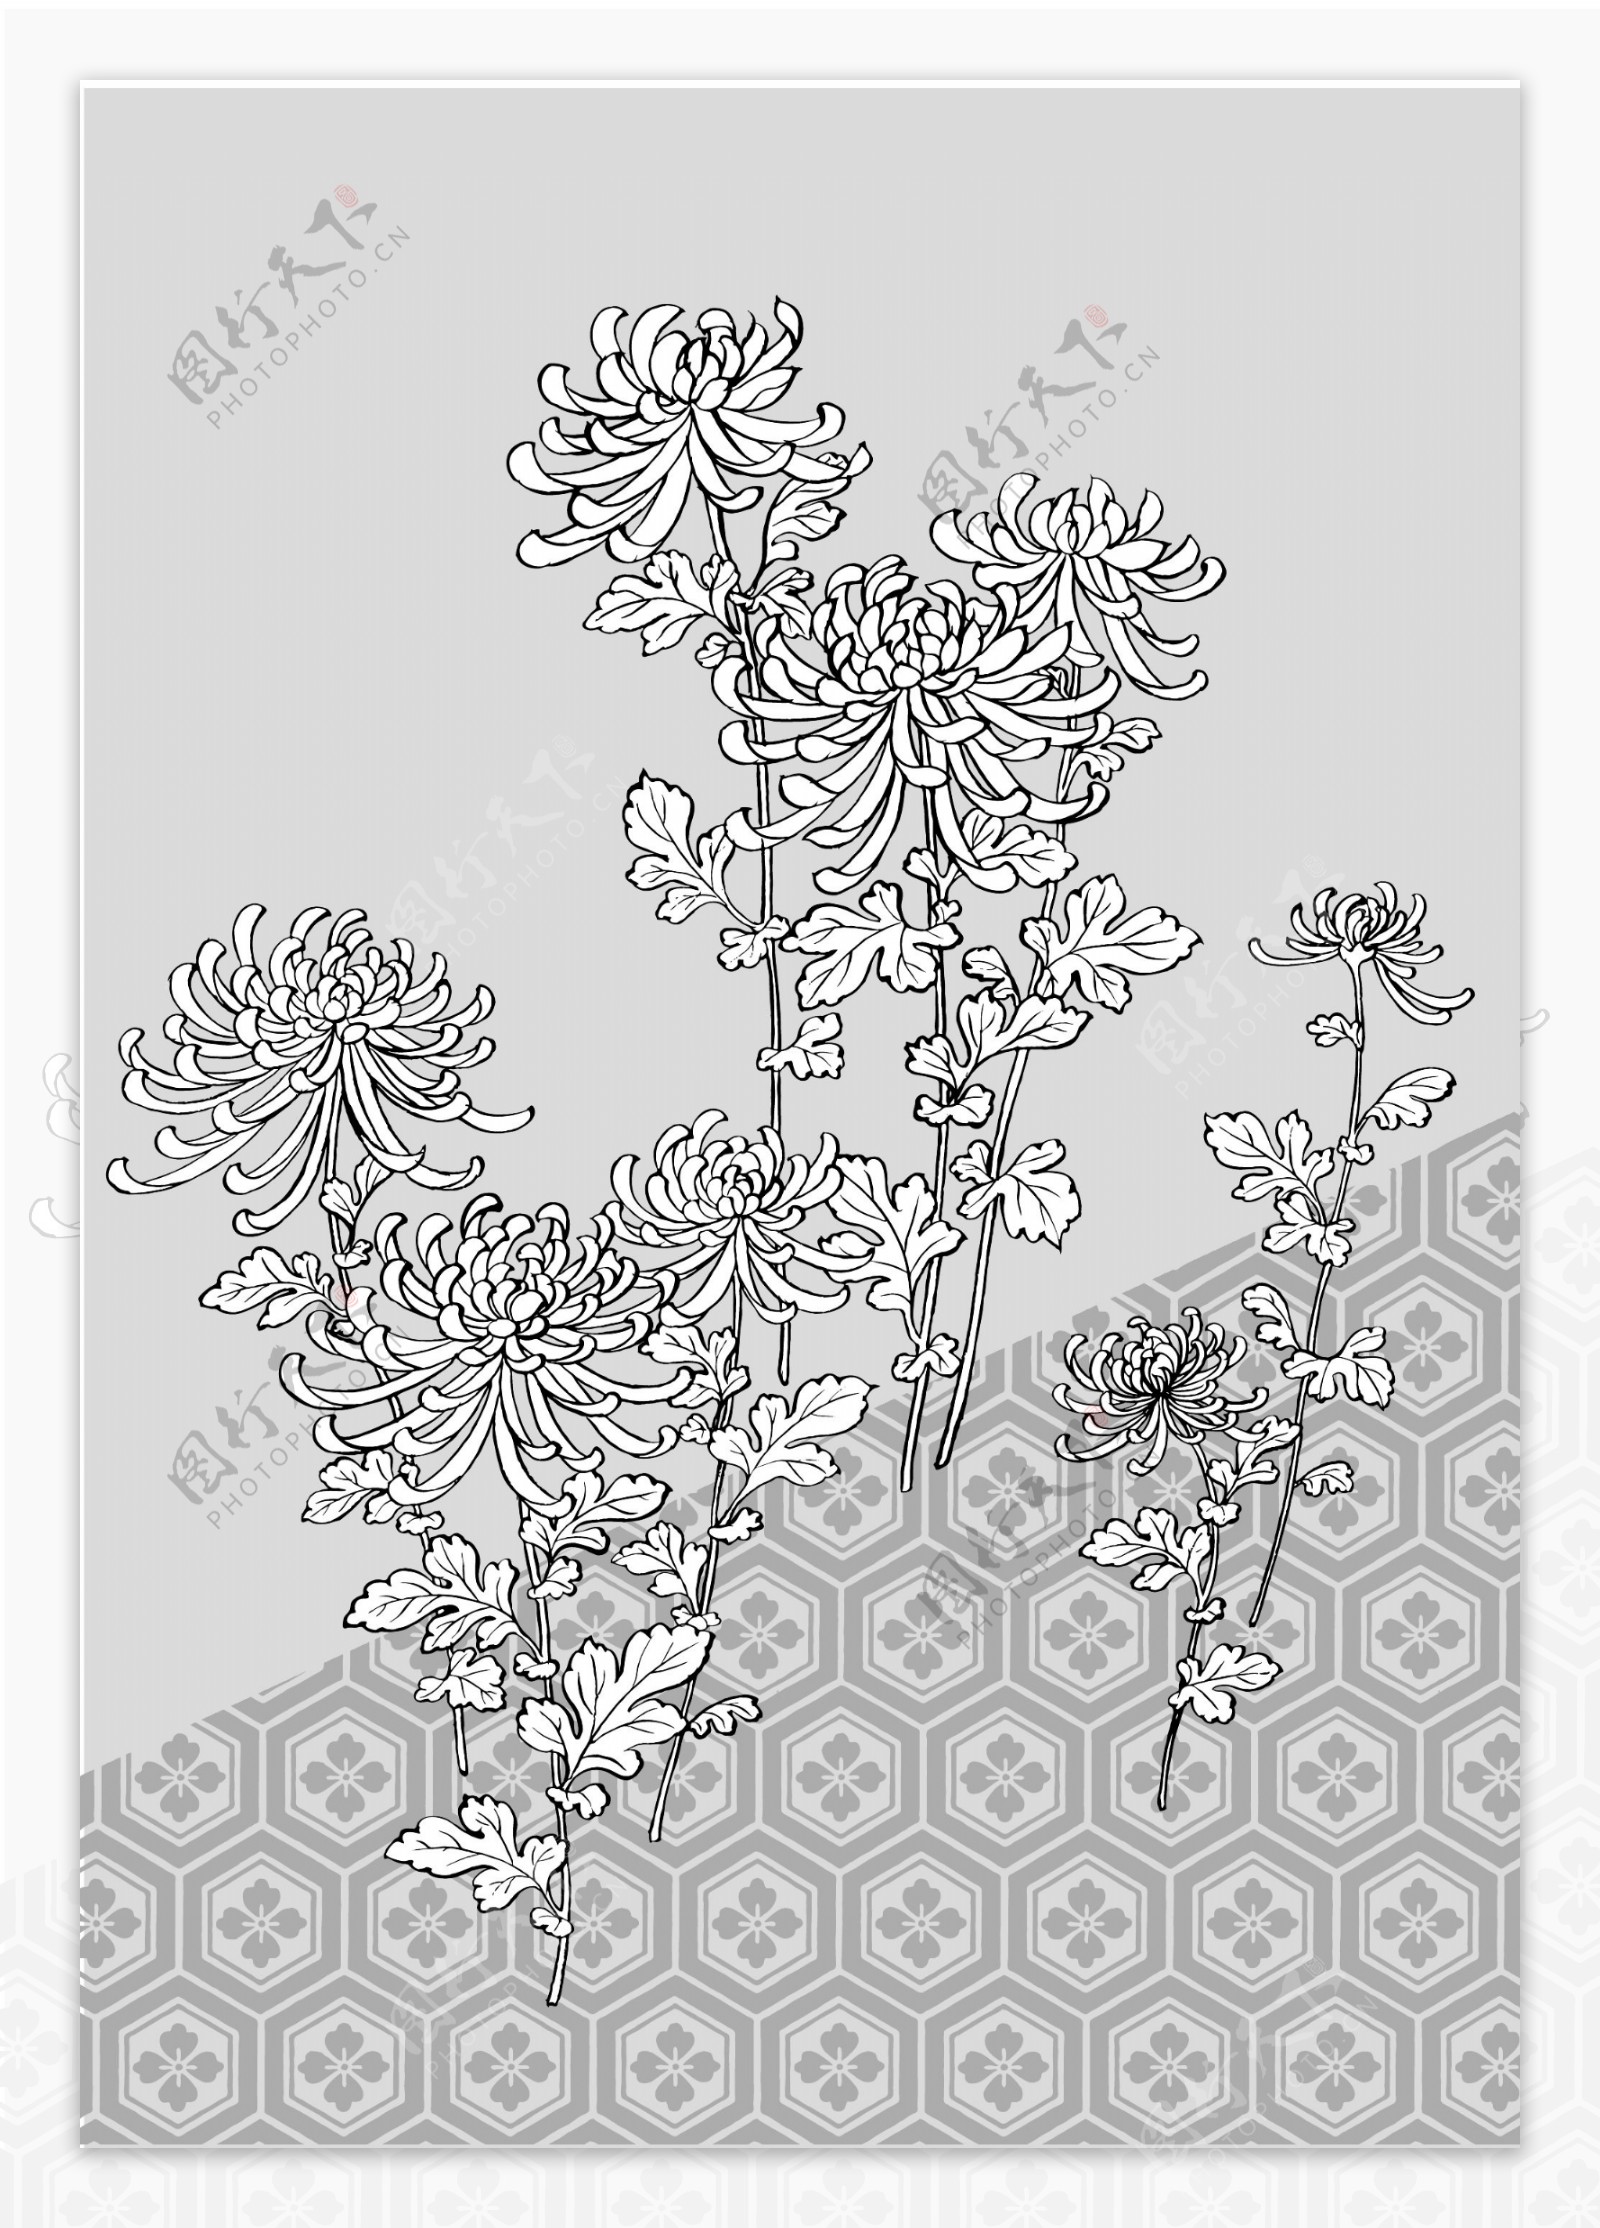 日本线描植物花卉矢量素材39菊花龟甲背景图片